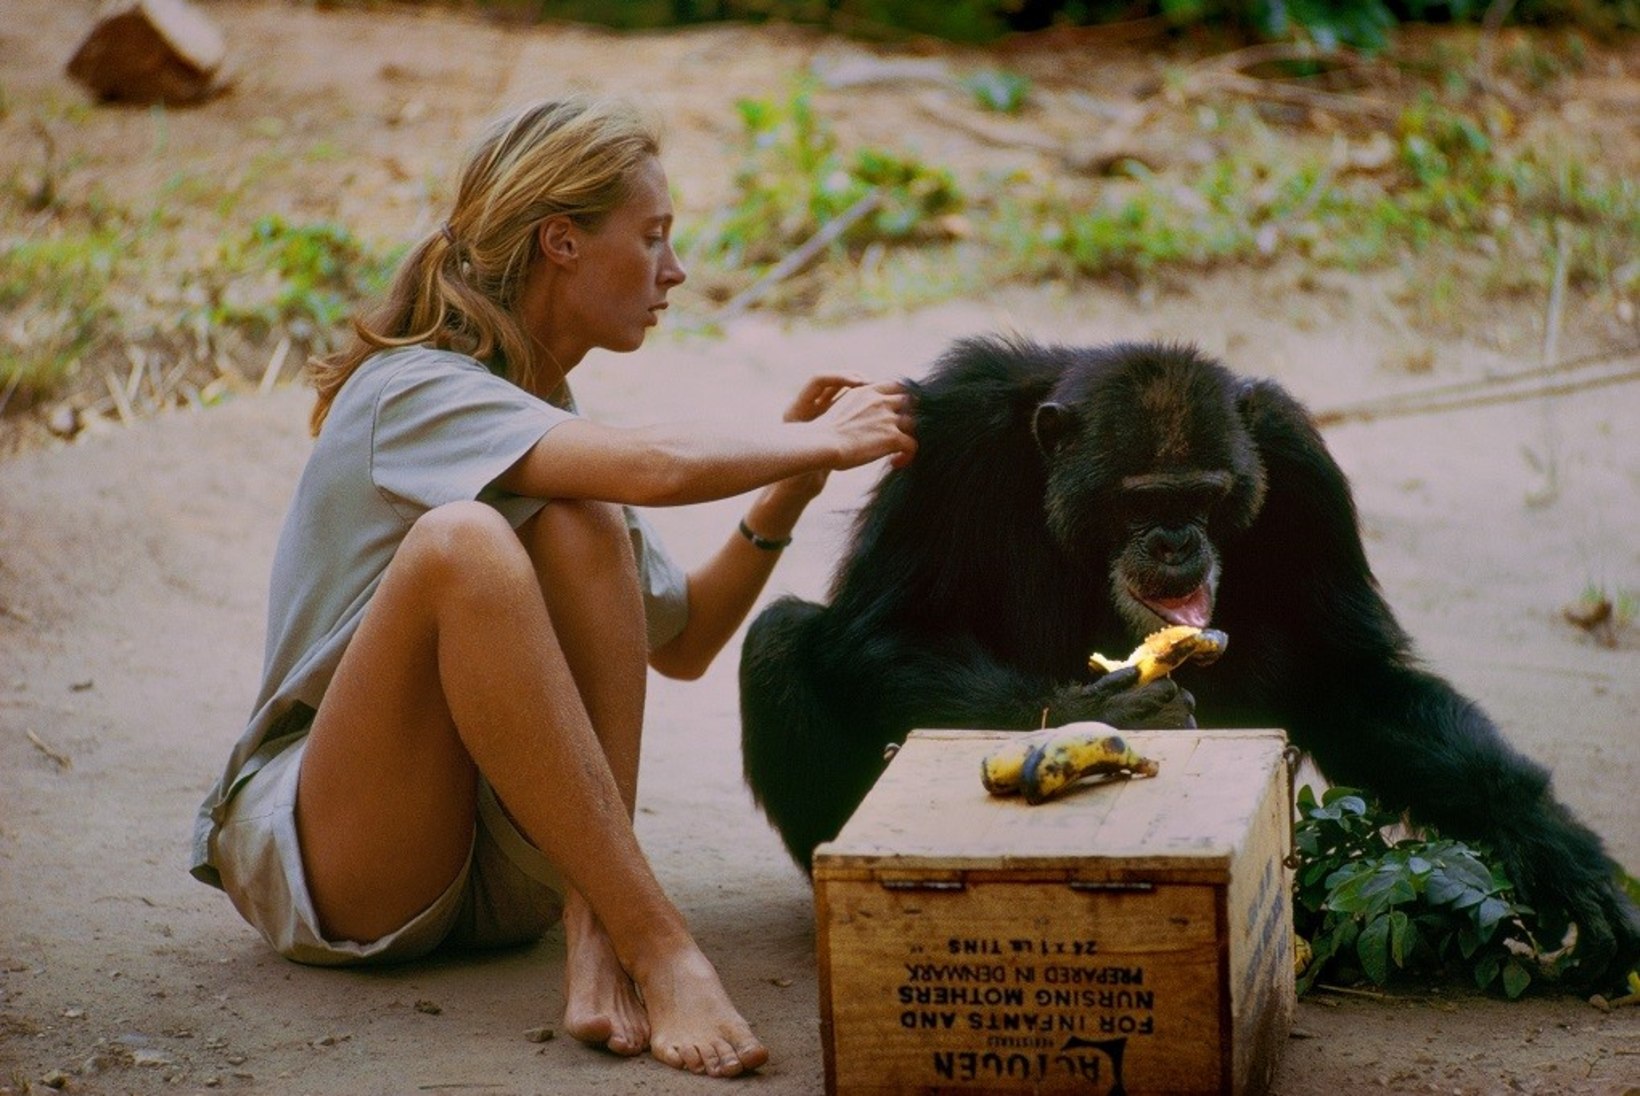 Teleekraanile jõuab dokumentaalfilm kuulsast šimpansiuurijast Jane Goodallist